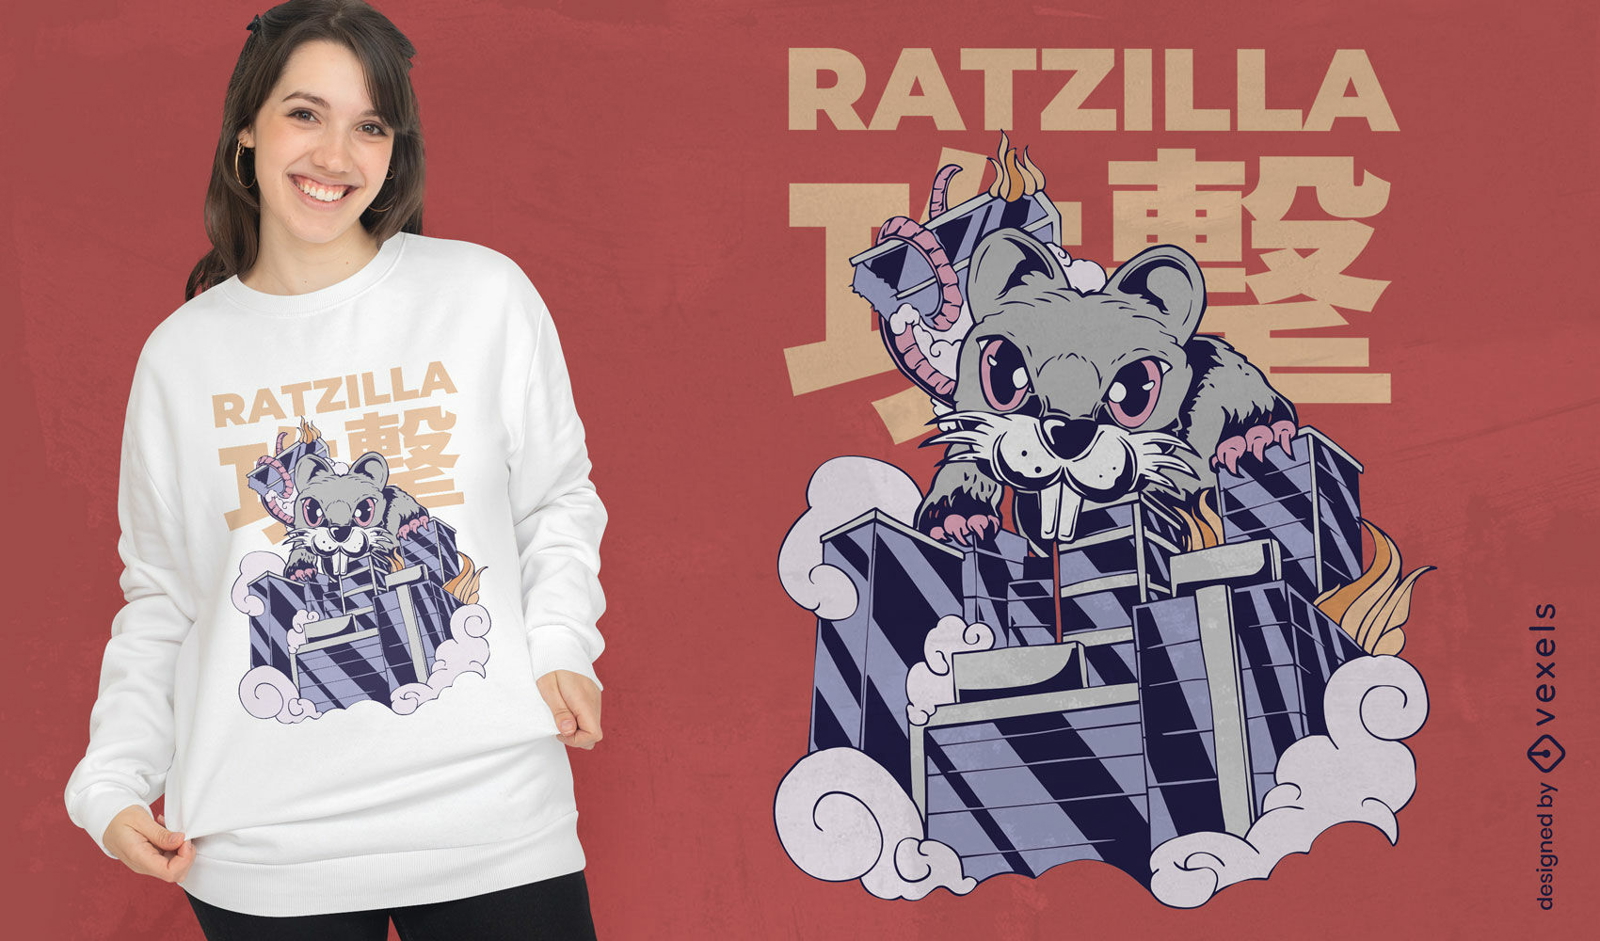 Giant rat animal monster t-shirt design